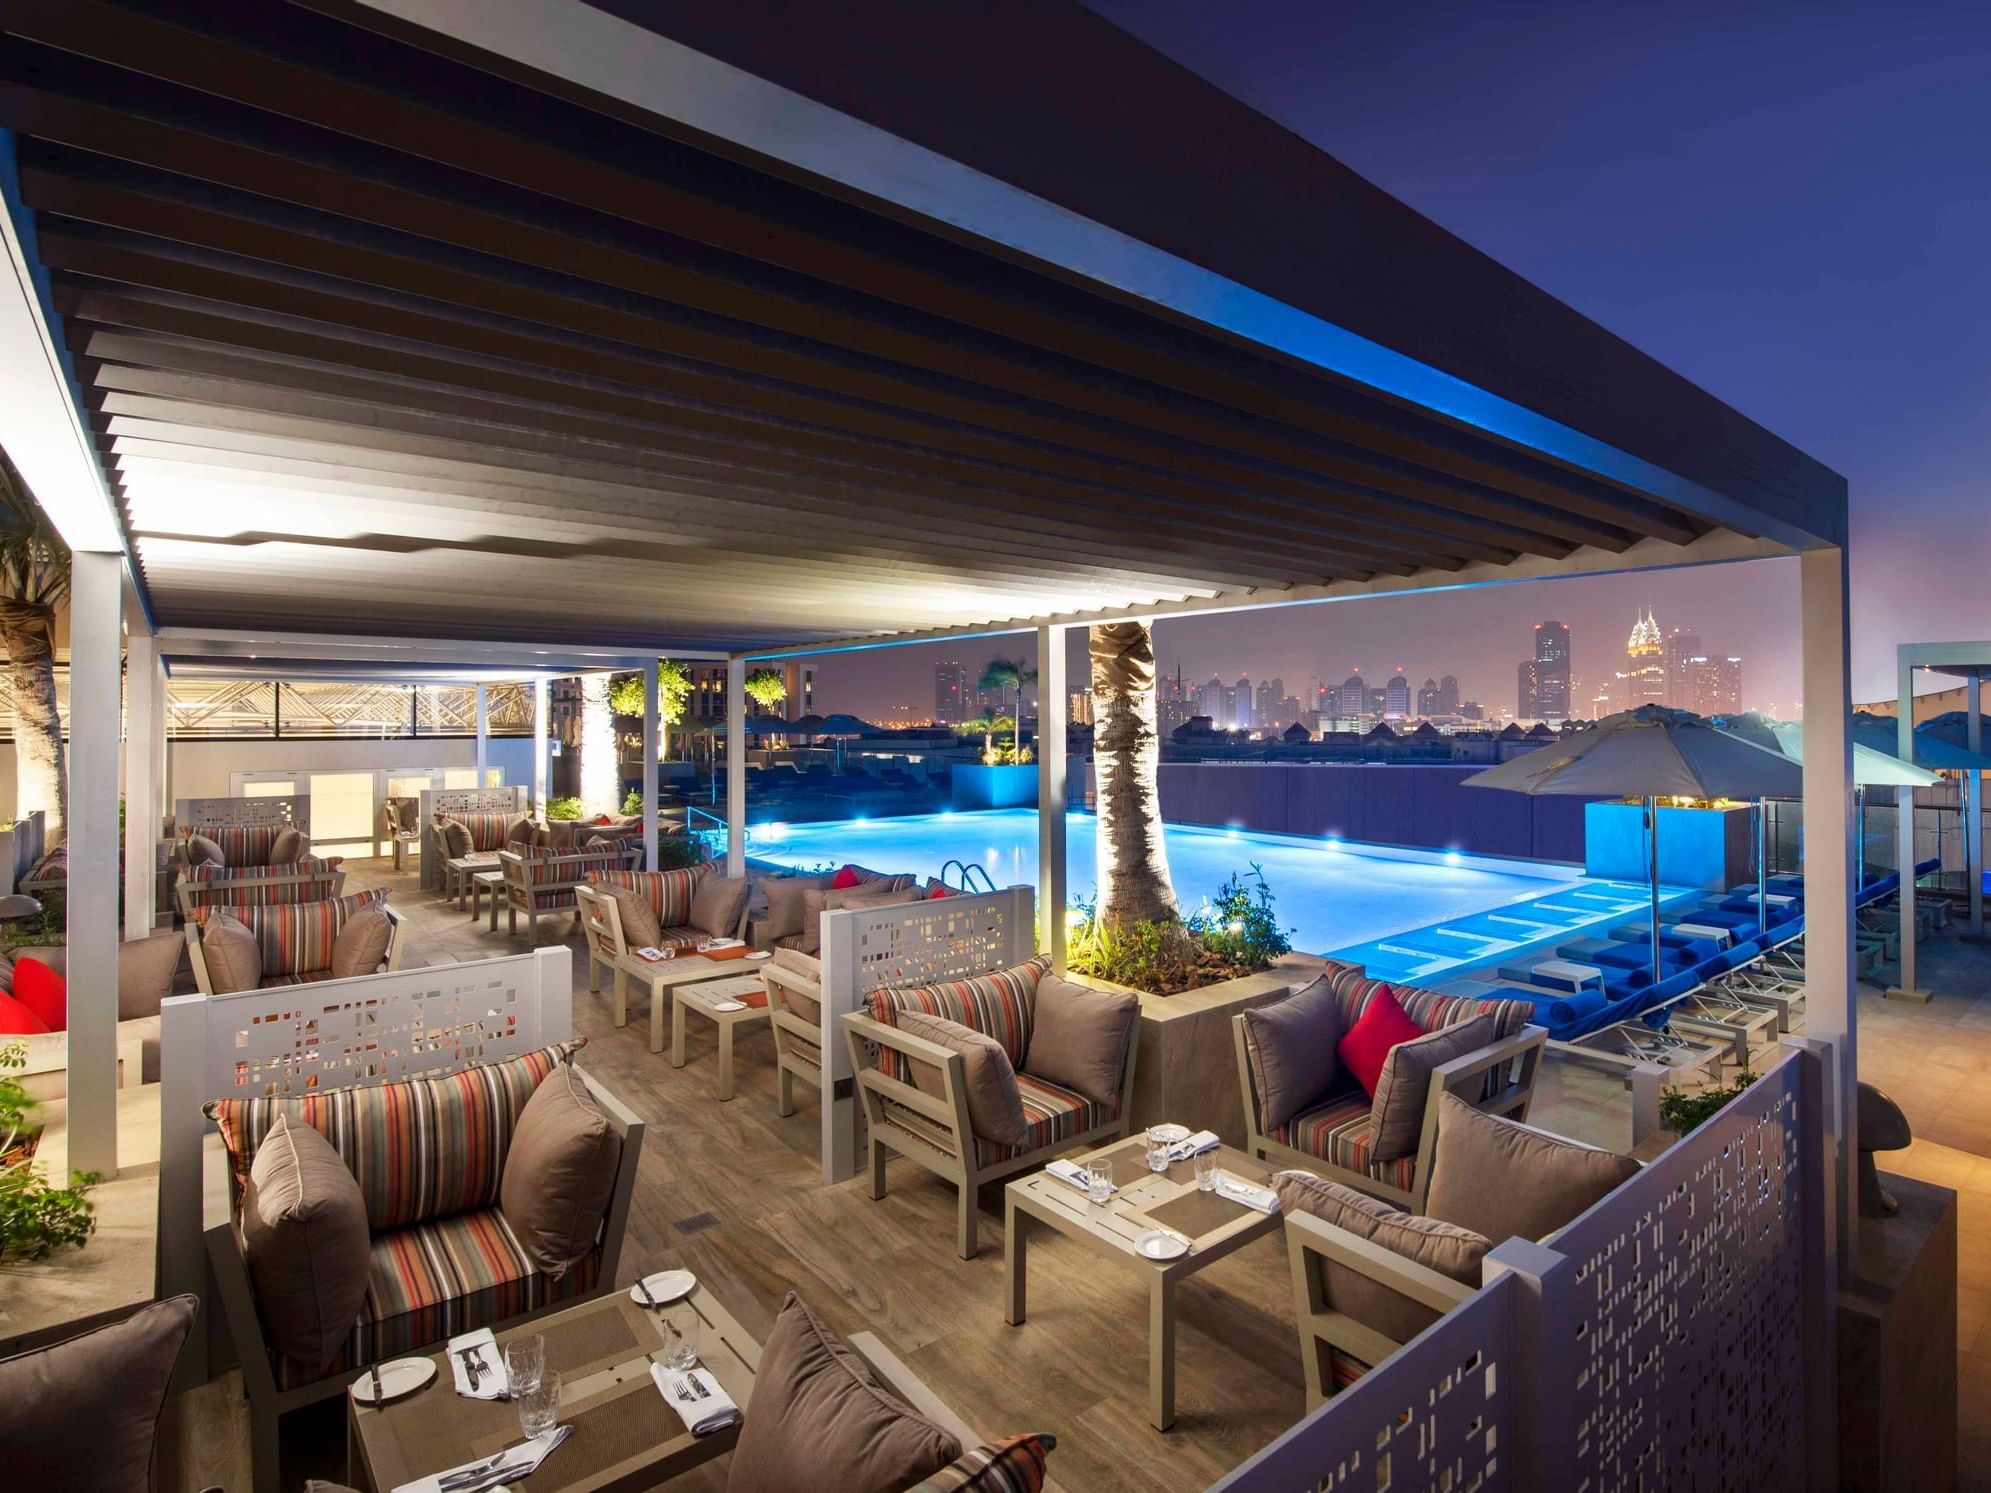 Pacifico Terrace at Grand Cosmopolitan Hotel in Dubai